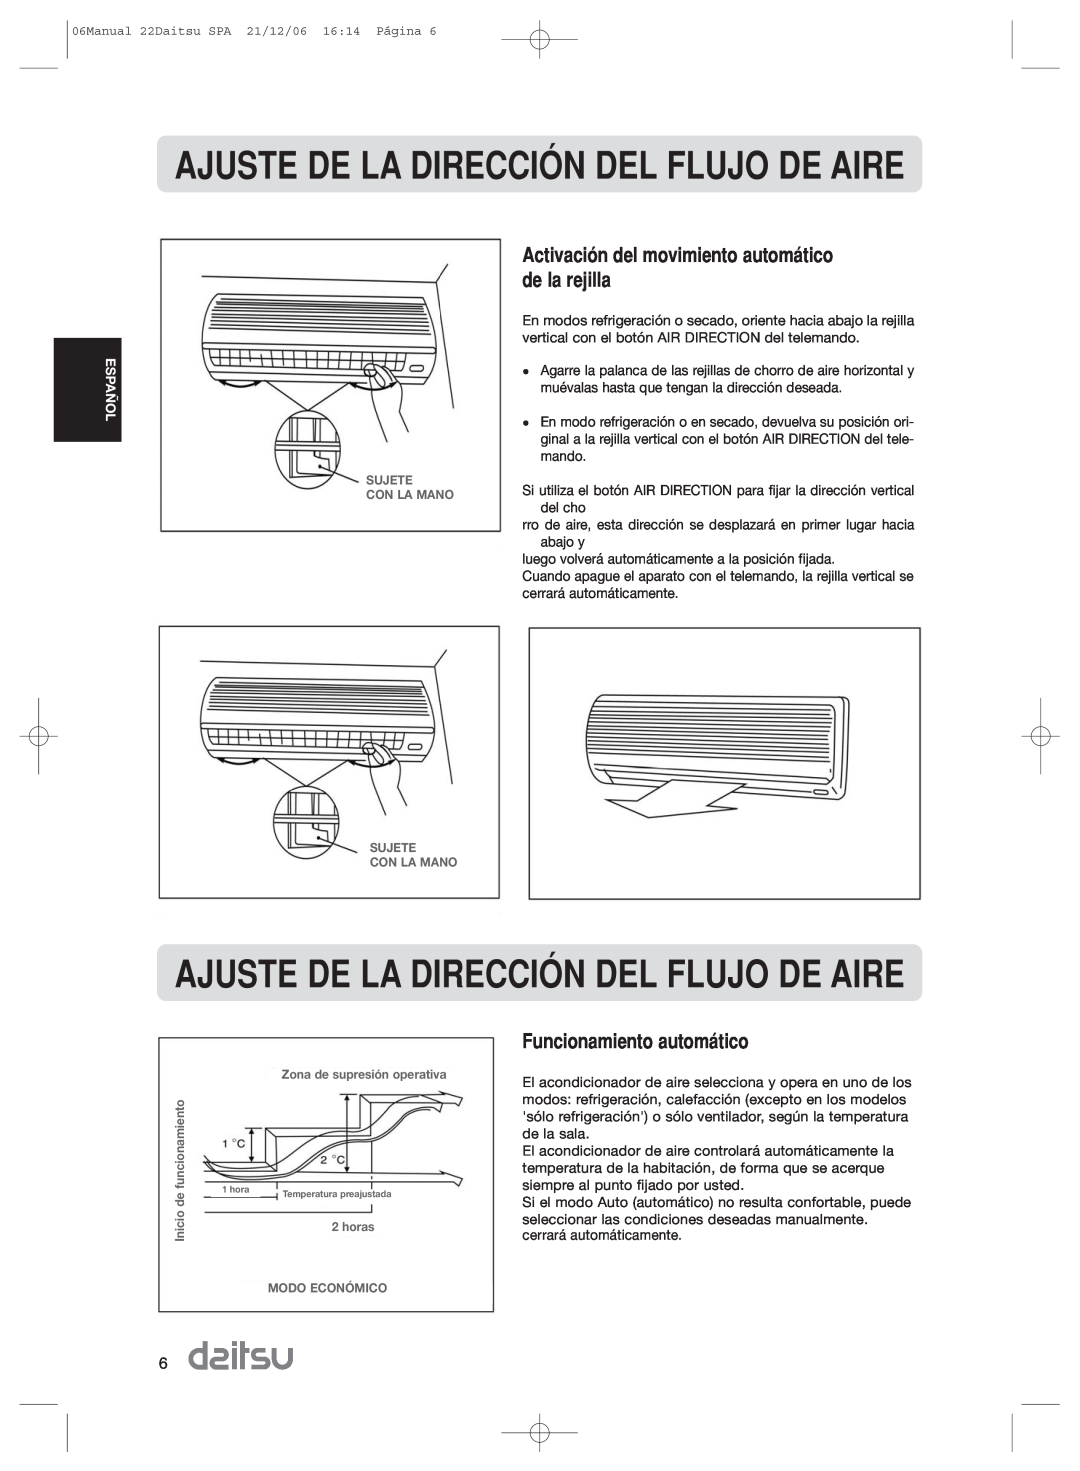 Daitsu ASD 9U2, ASD 129U11 operation manual Funcionamiento autom‡tico, AJUSTE DE LA DIRECCIîN DEL FLUJO DE AIRE 